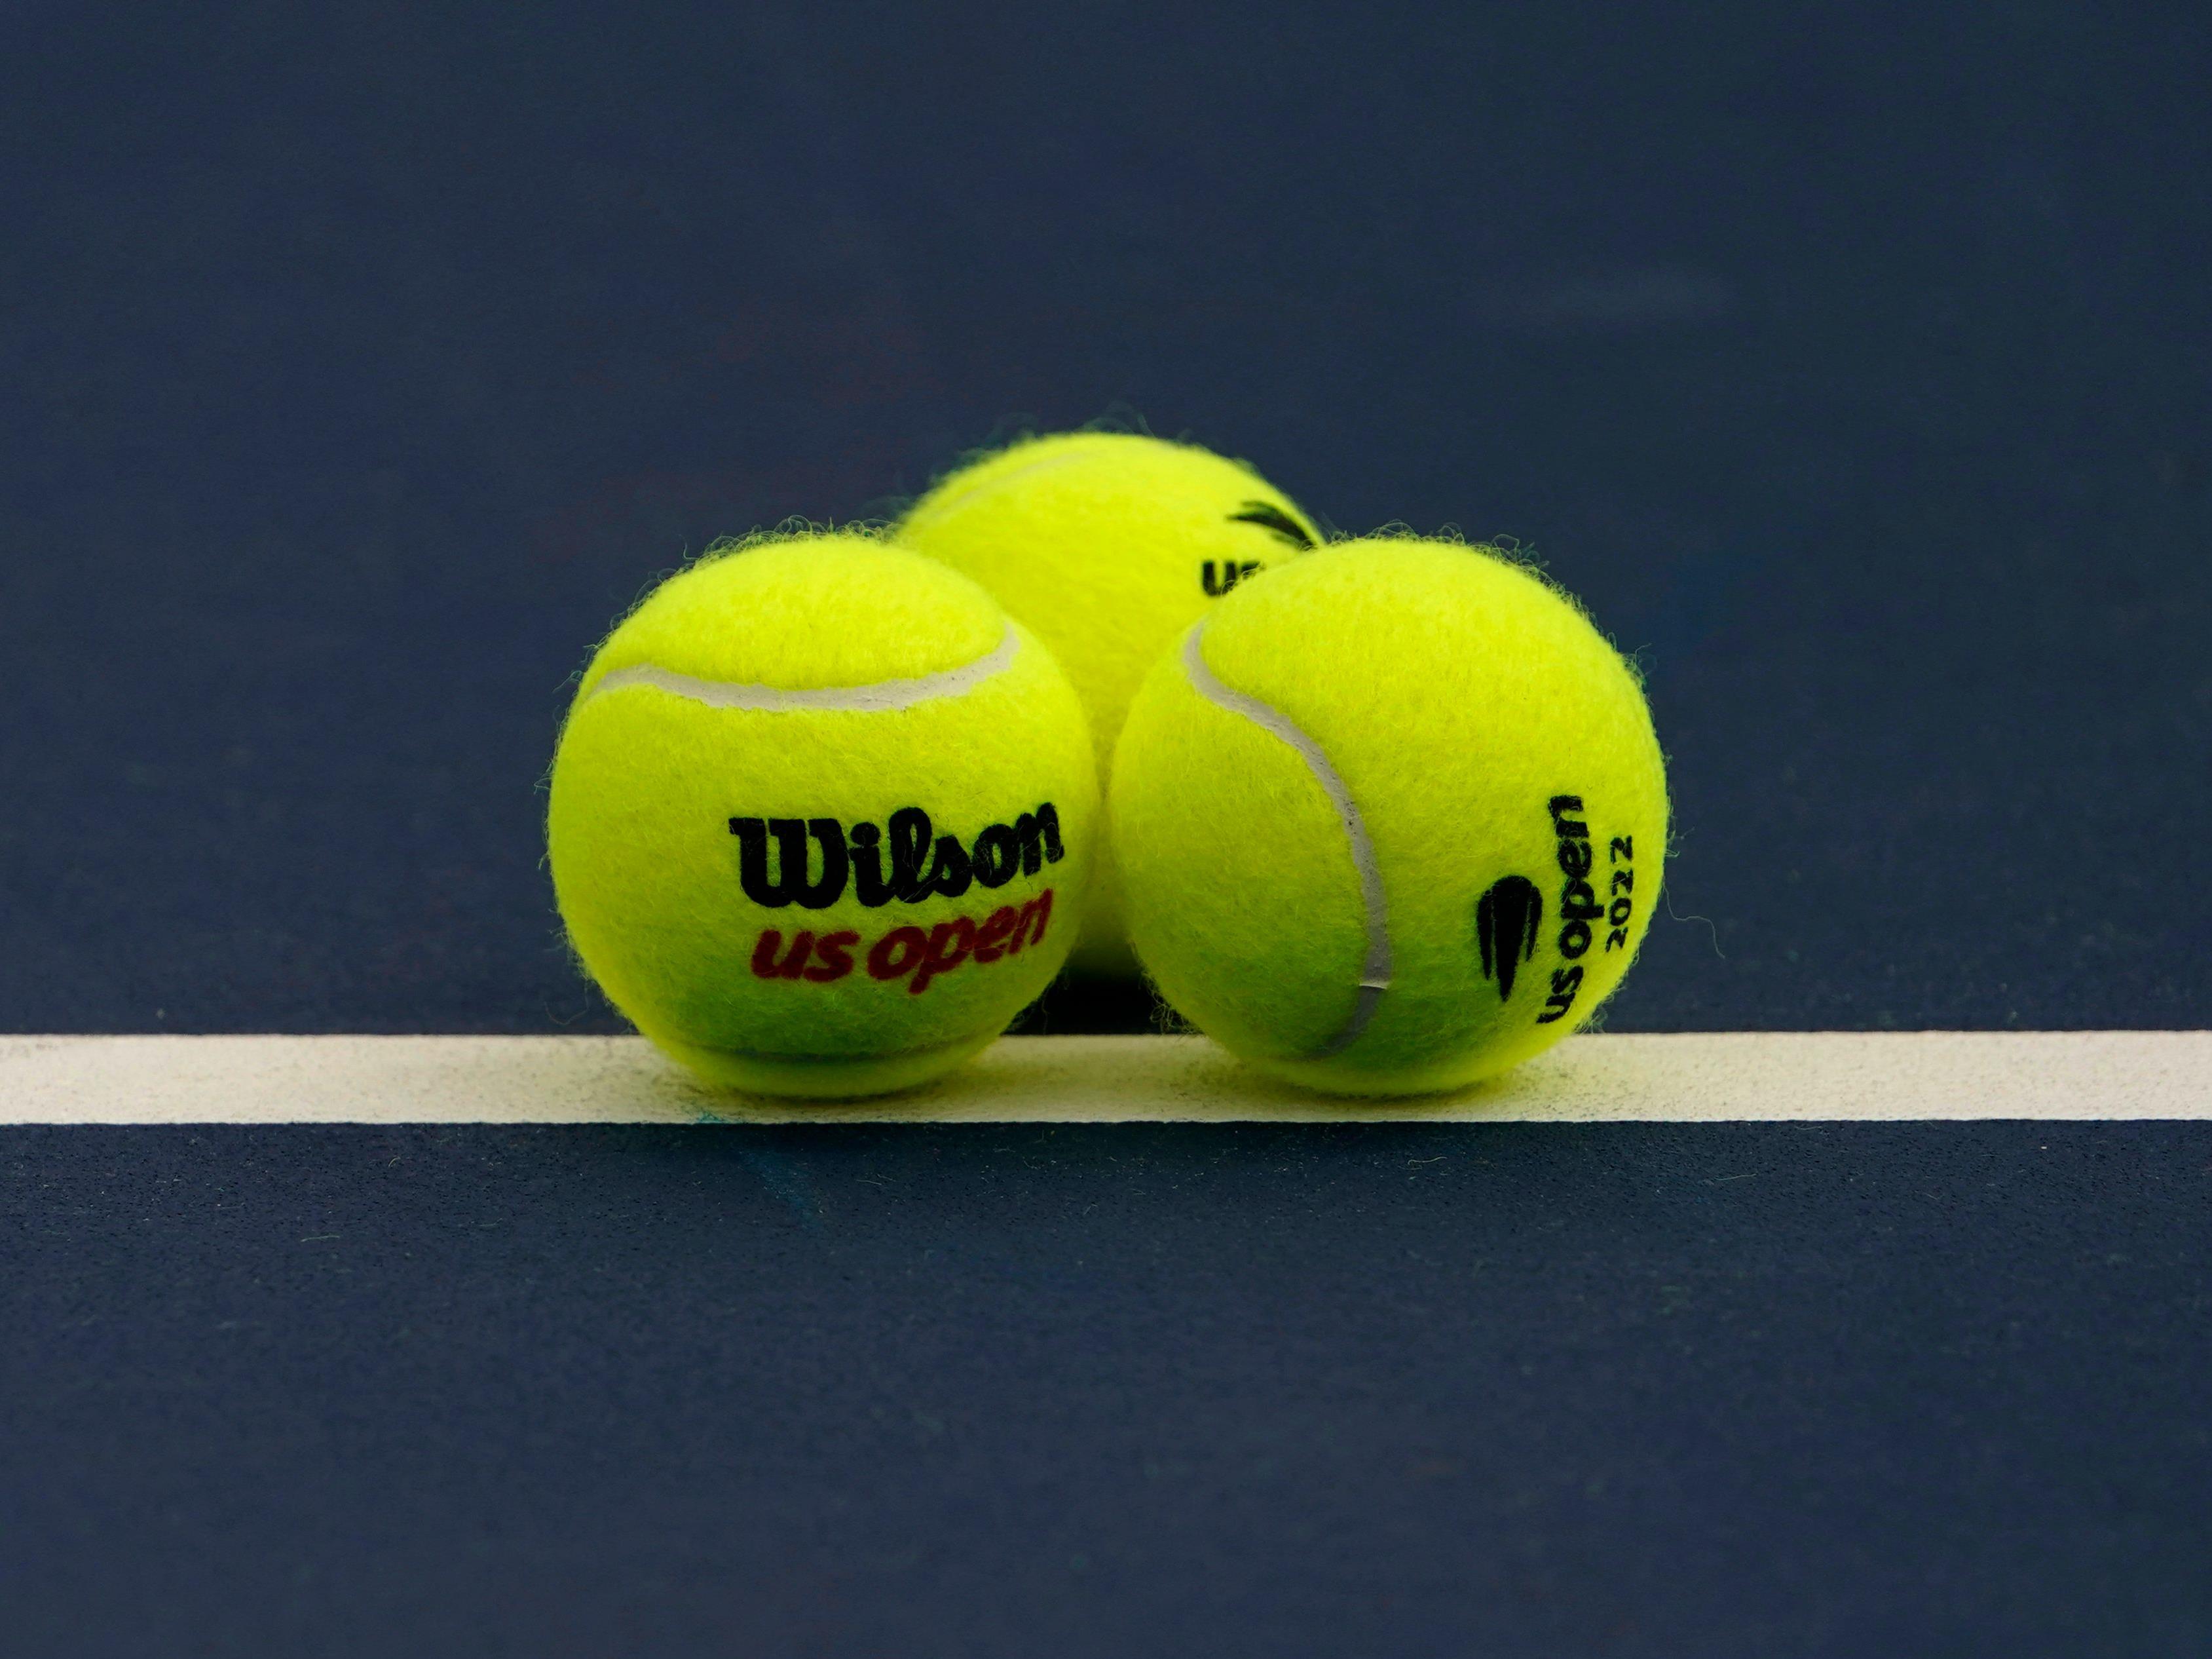 La précieuse sélection d'une balle de tennis avant de servir